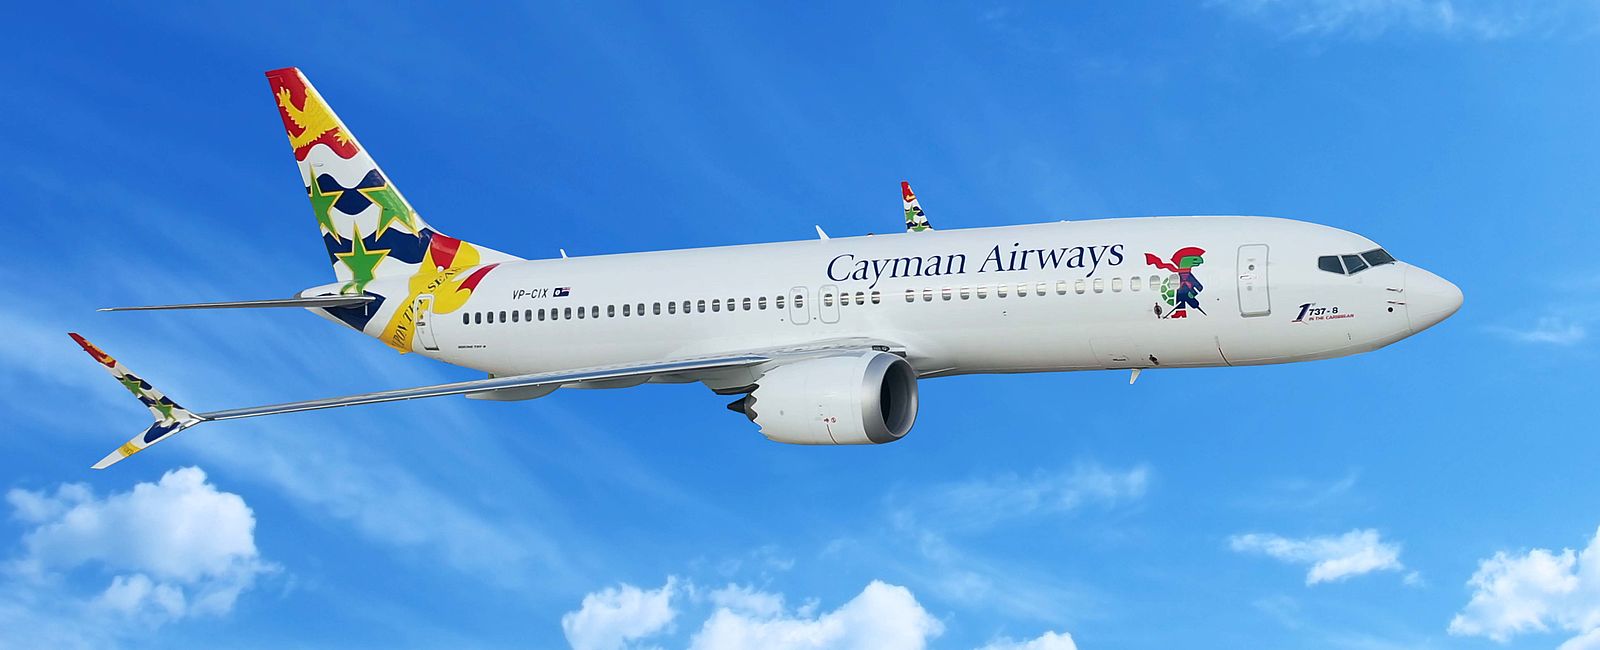 NEWS
 Cayman Airways nimmt Verbindung nach Panama auf  
